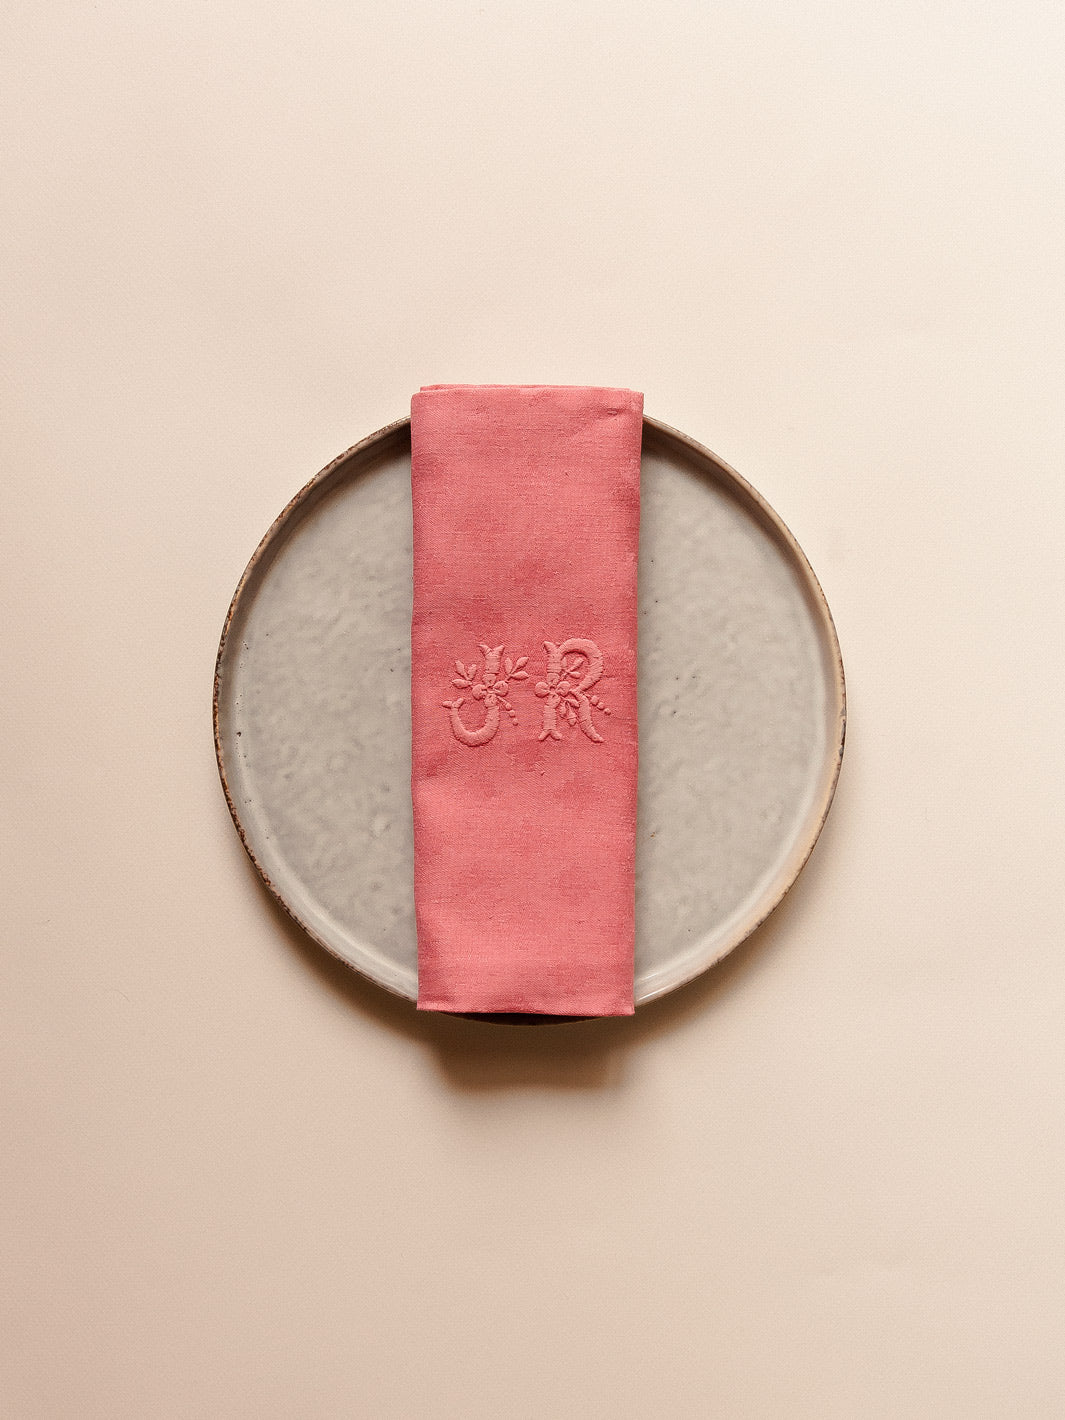 Set of 12 coral pink damask napkins "JR"